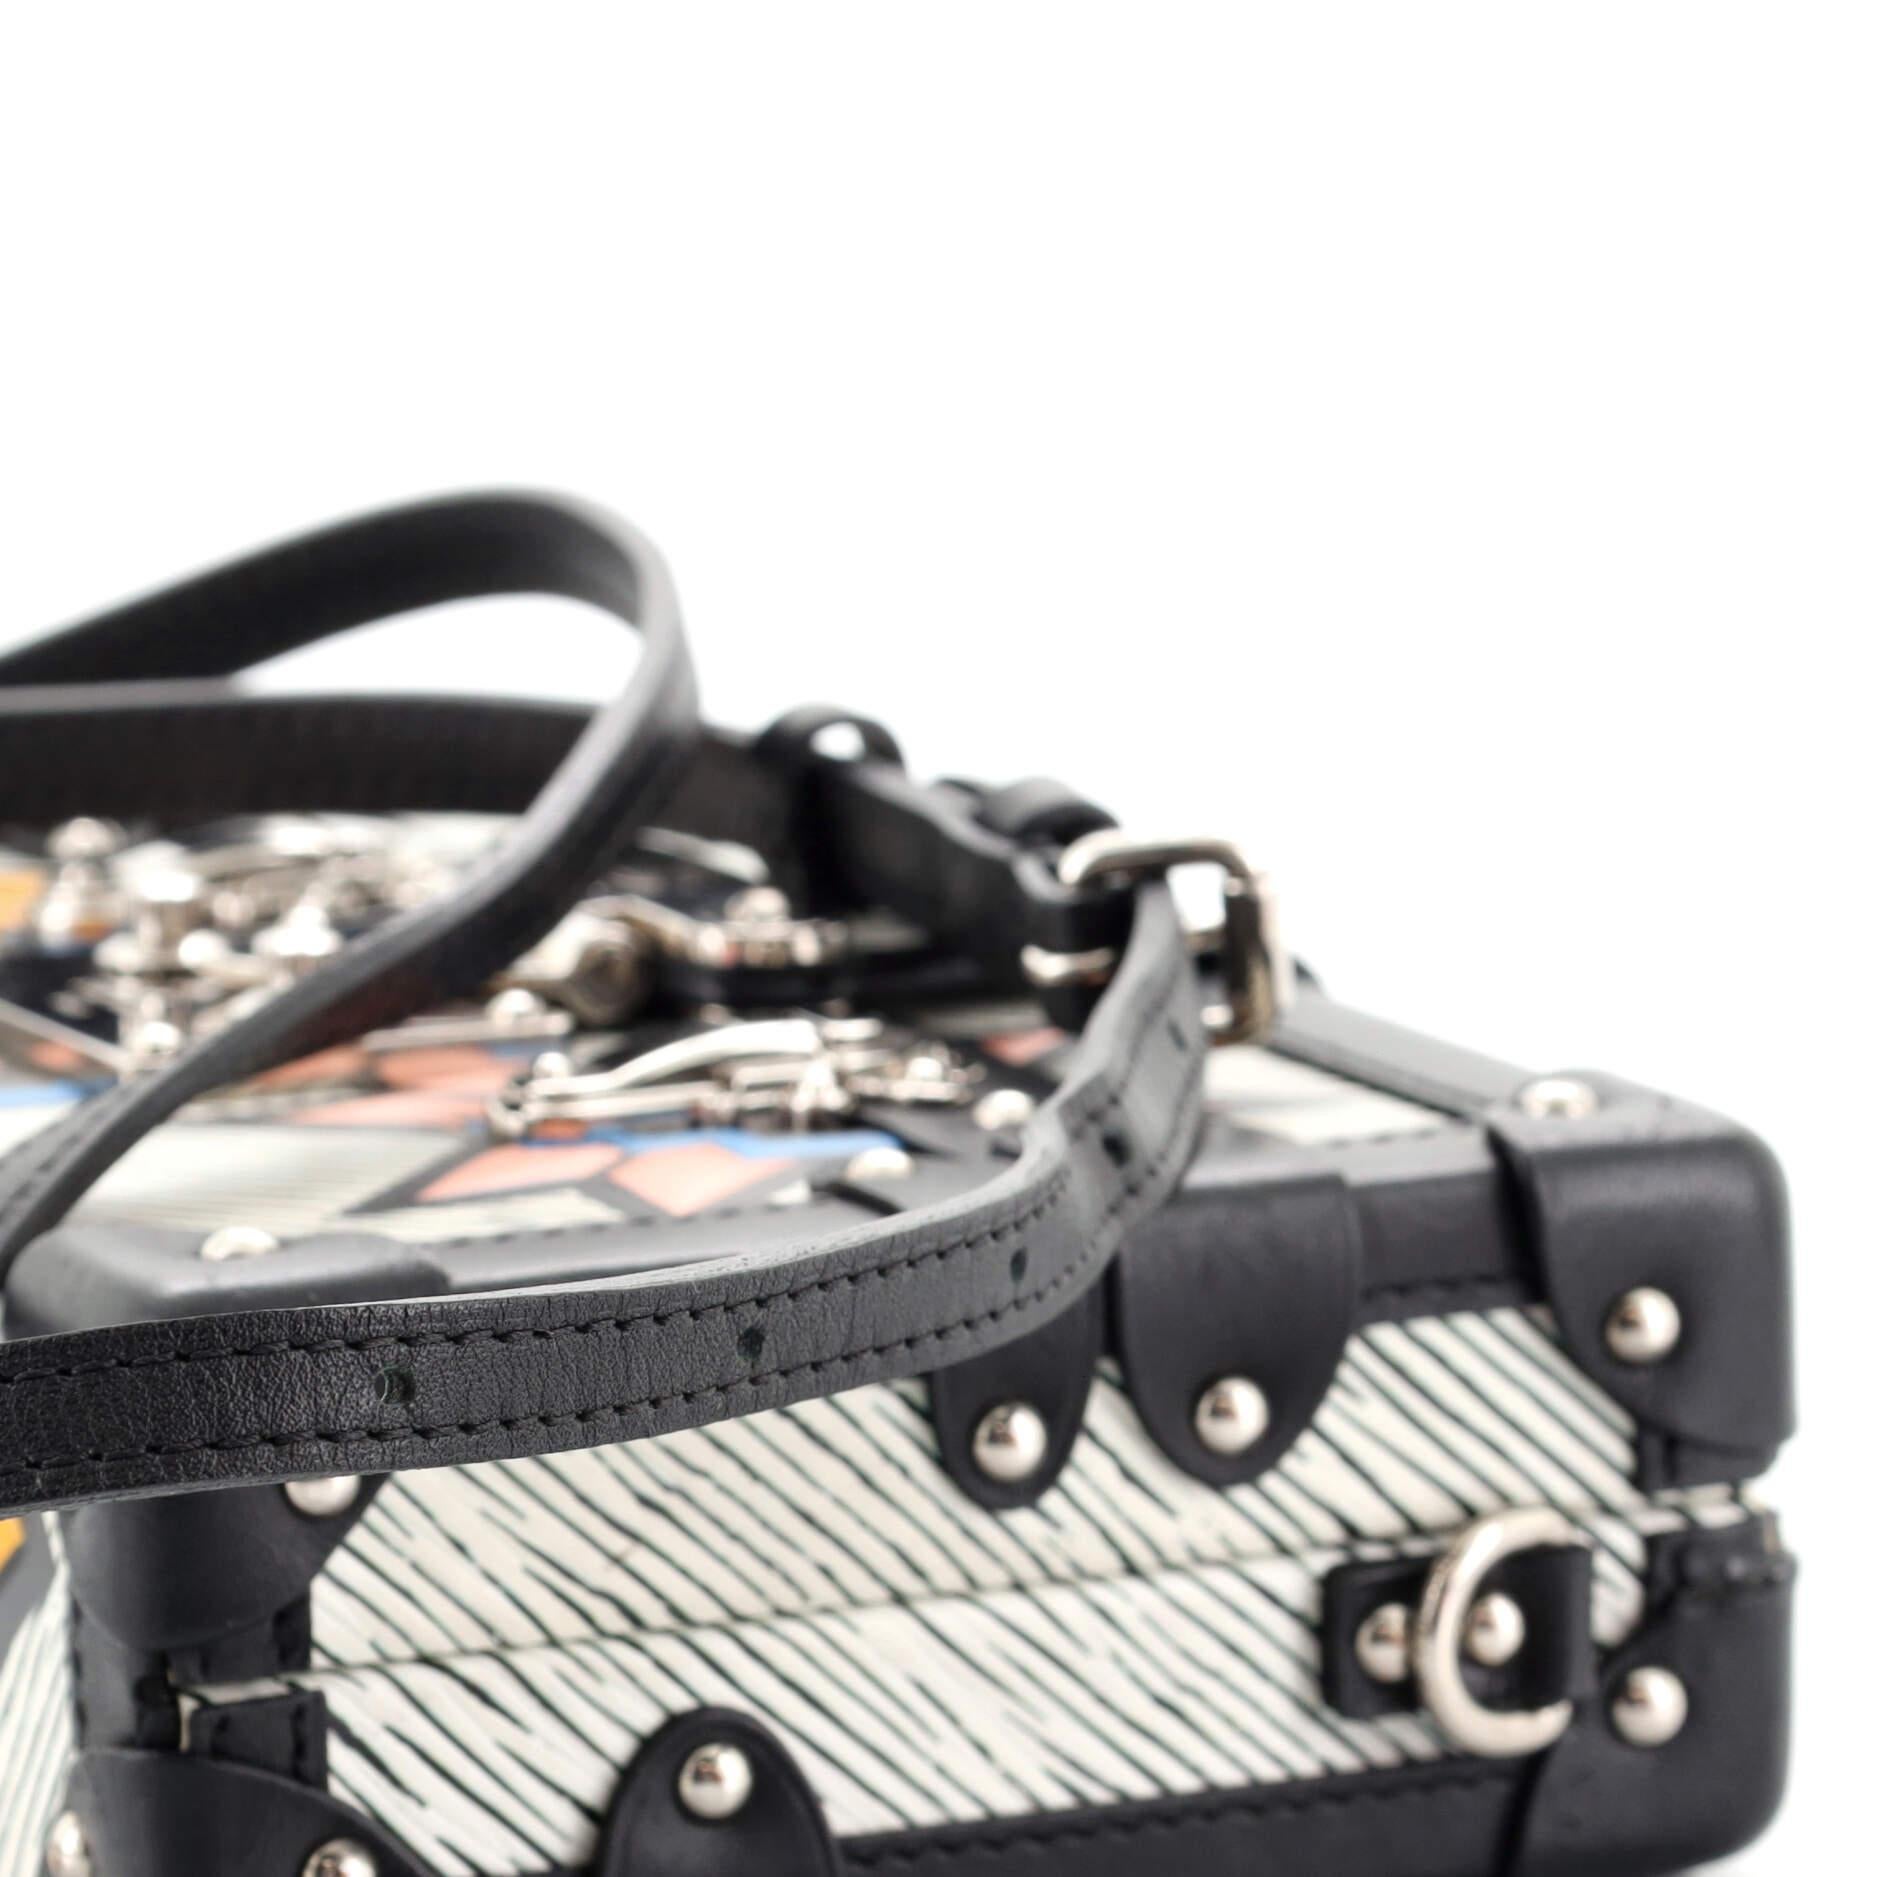 Black Louis Vuitton Petite Malle Handbag Limited Edition Azteque Epi Leather